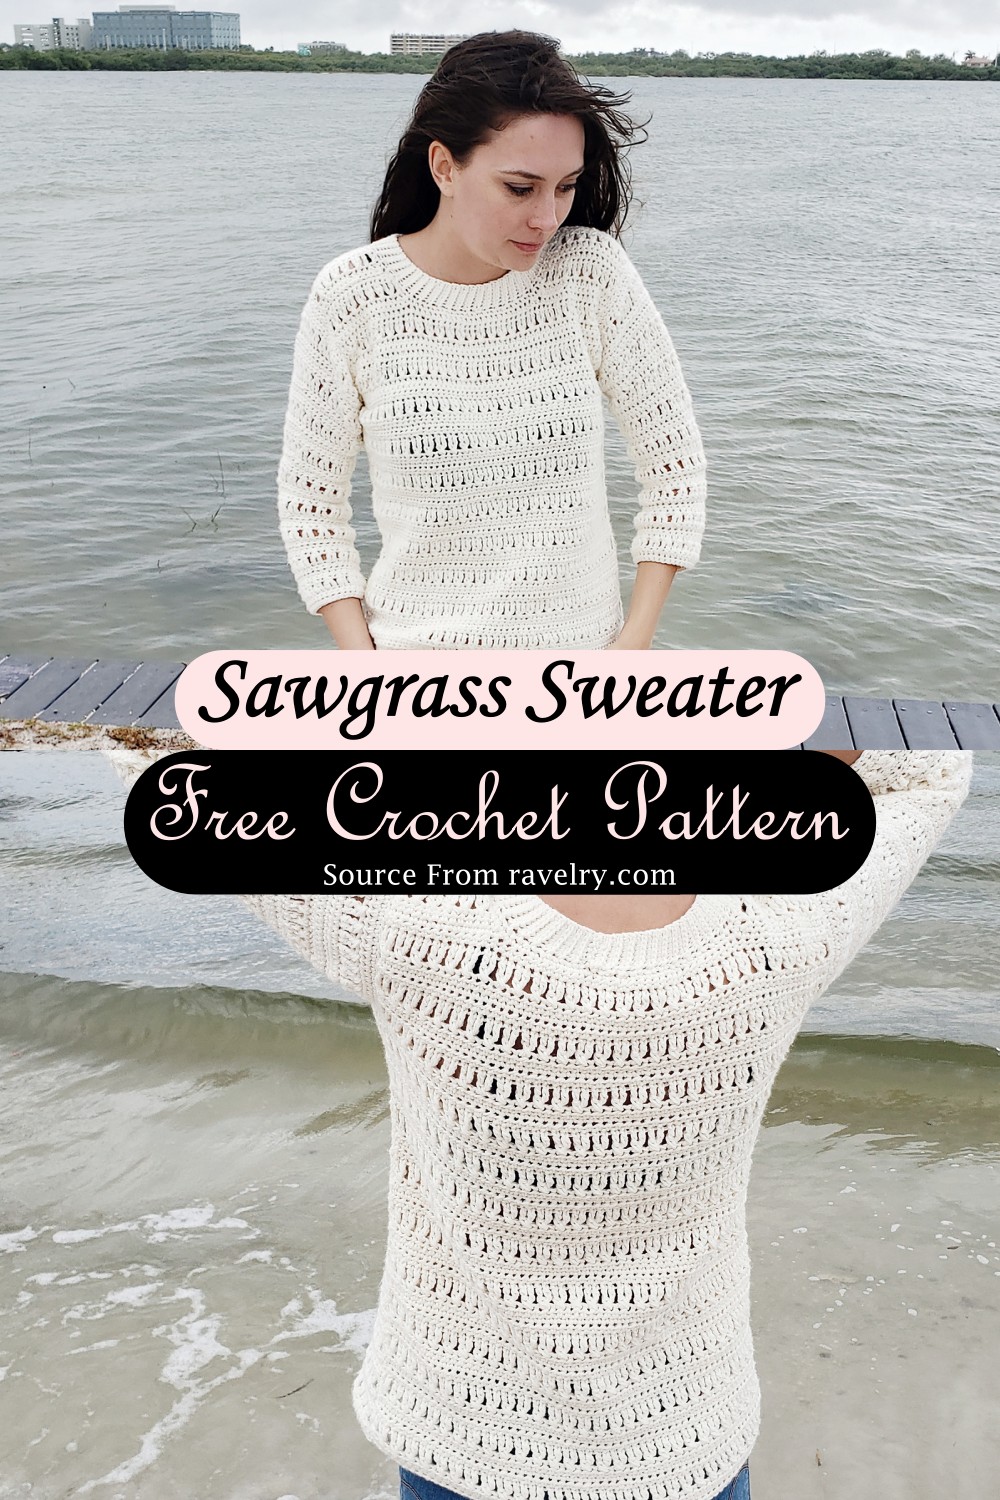 Sawgrass Sweater